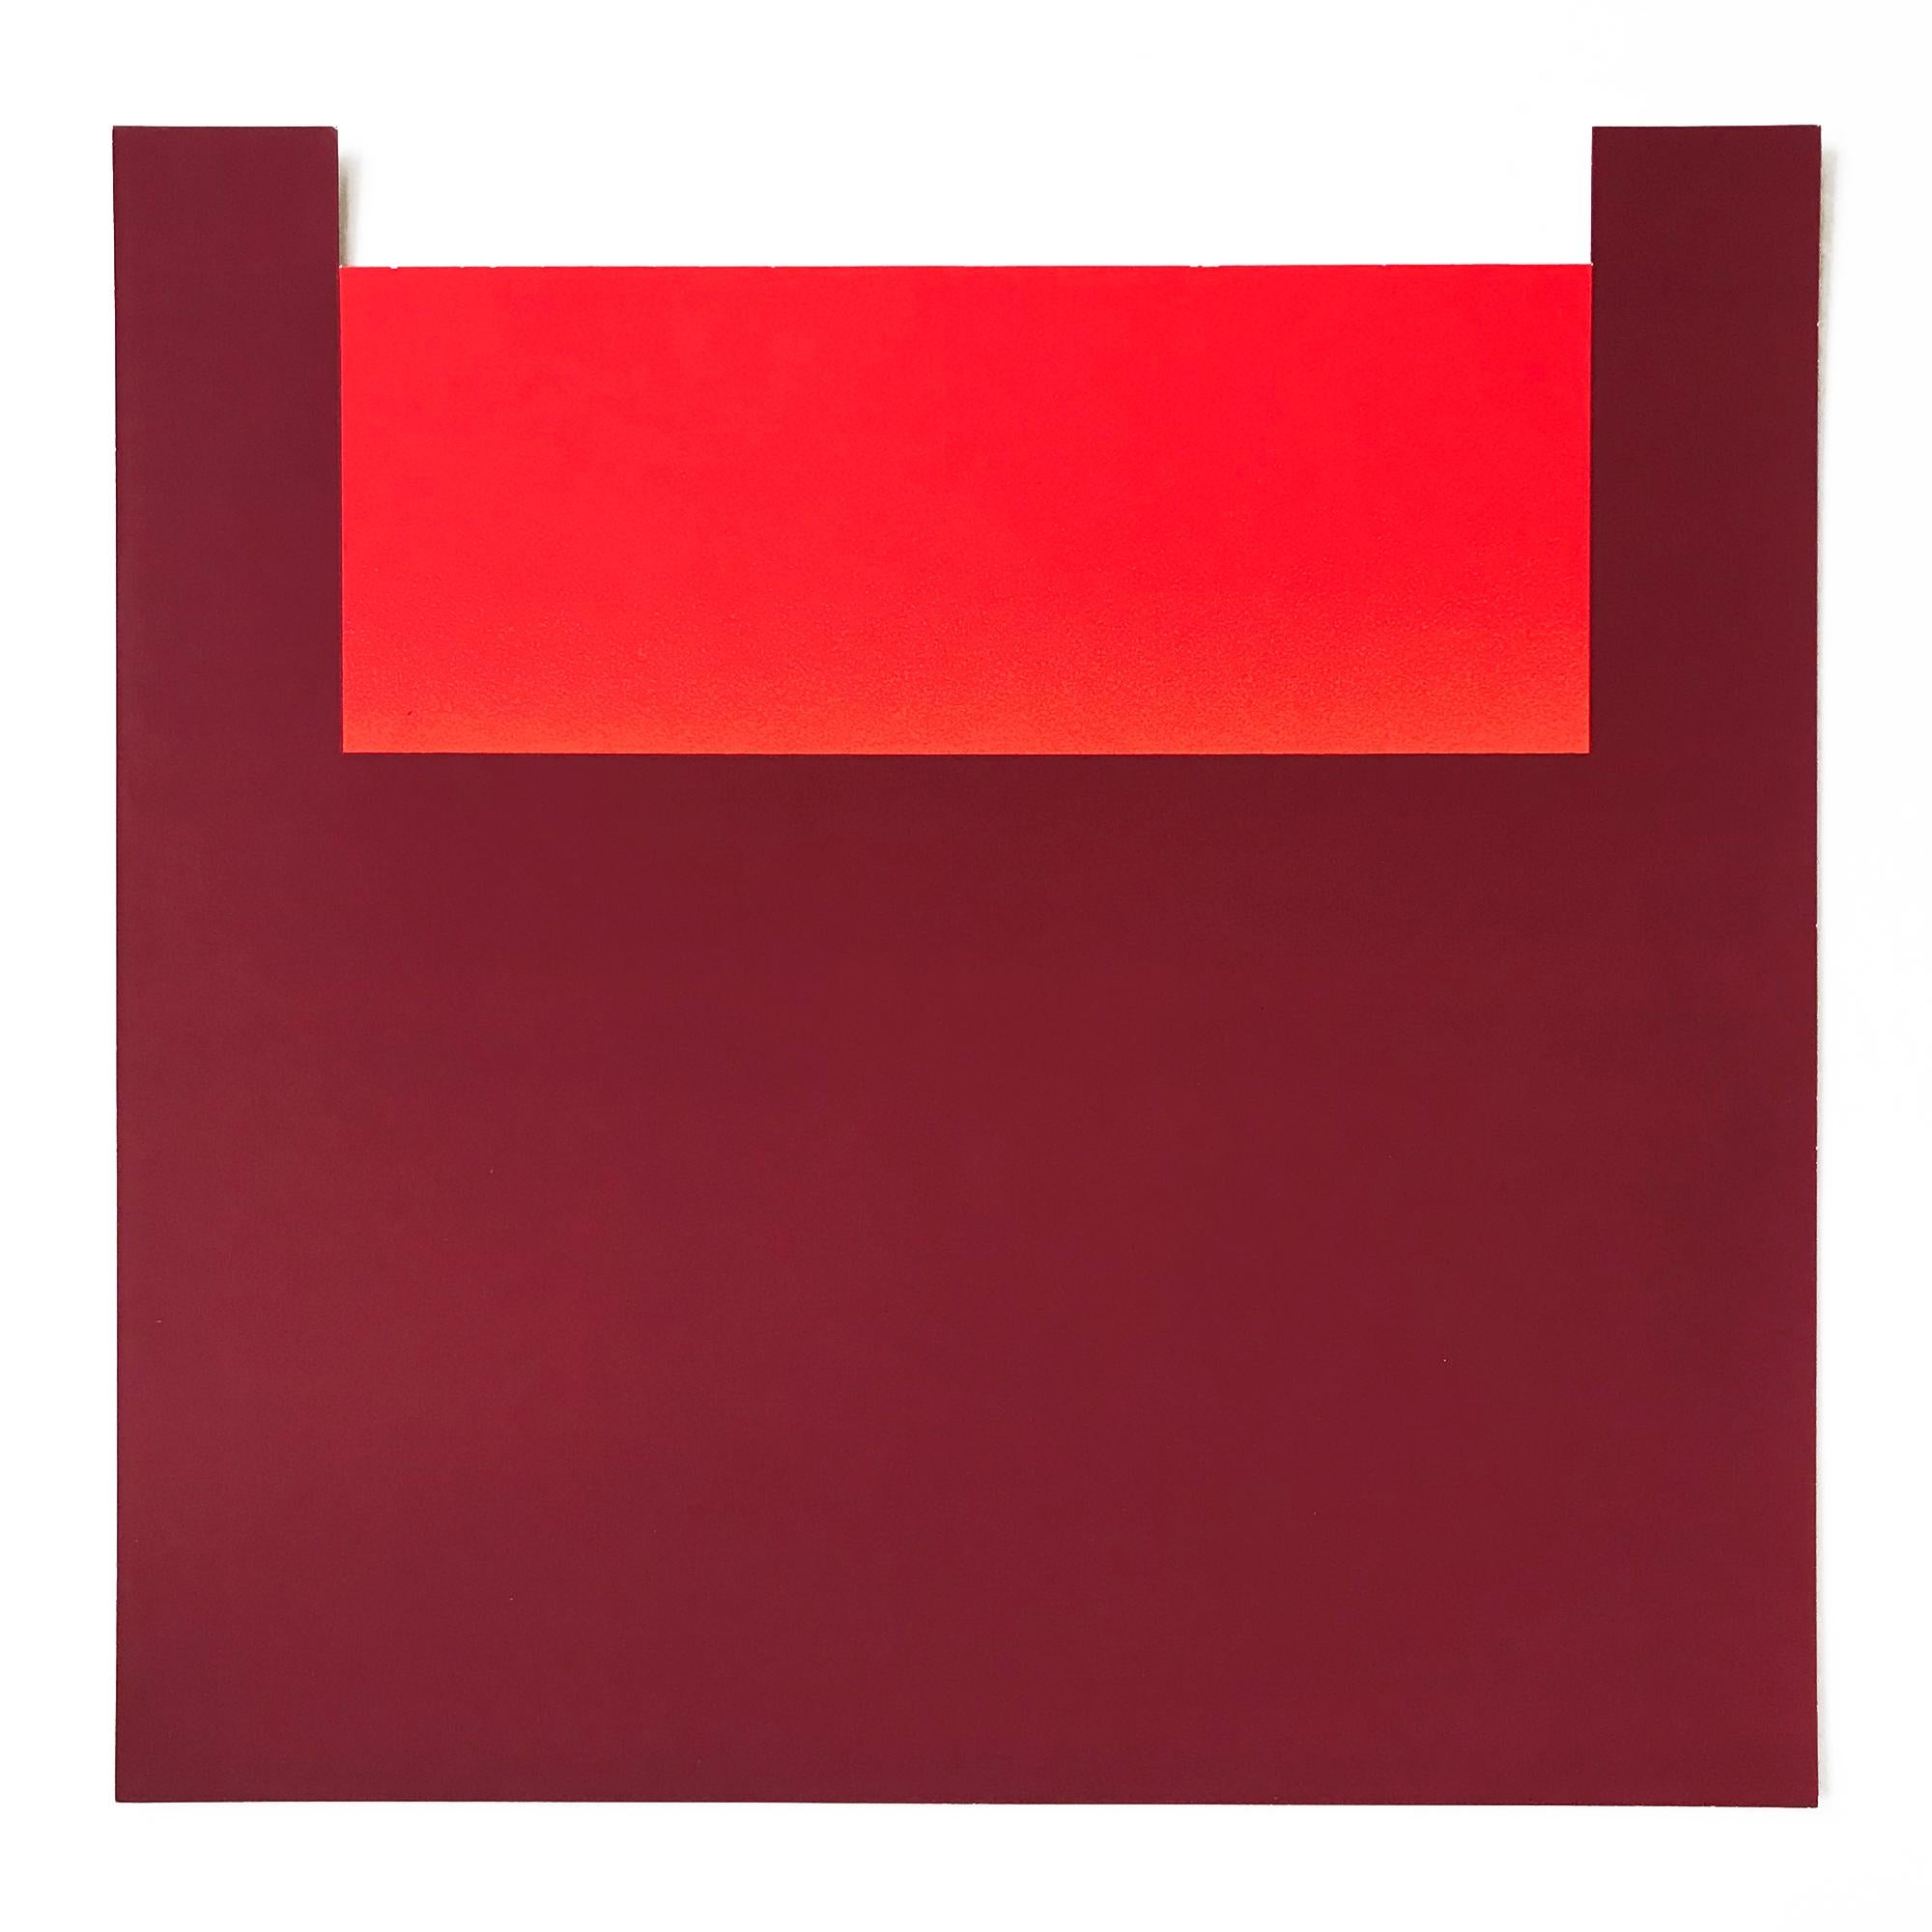 Rupprecht Geiger (1908 - München - 2009)
Warme Rottöne (Nr. 11 aus all die roten farben), 1981
Medium: Serigrafie auf 270g  Karton
Abmessungen: 39,5 x 40 cm
Abmessungen des Rahmens: 46,1 x 46,6 cm
Auflage von 100 + XX: Verso mit Bleistift